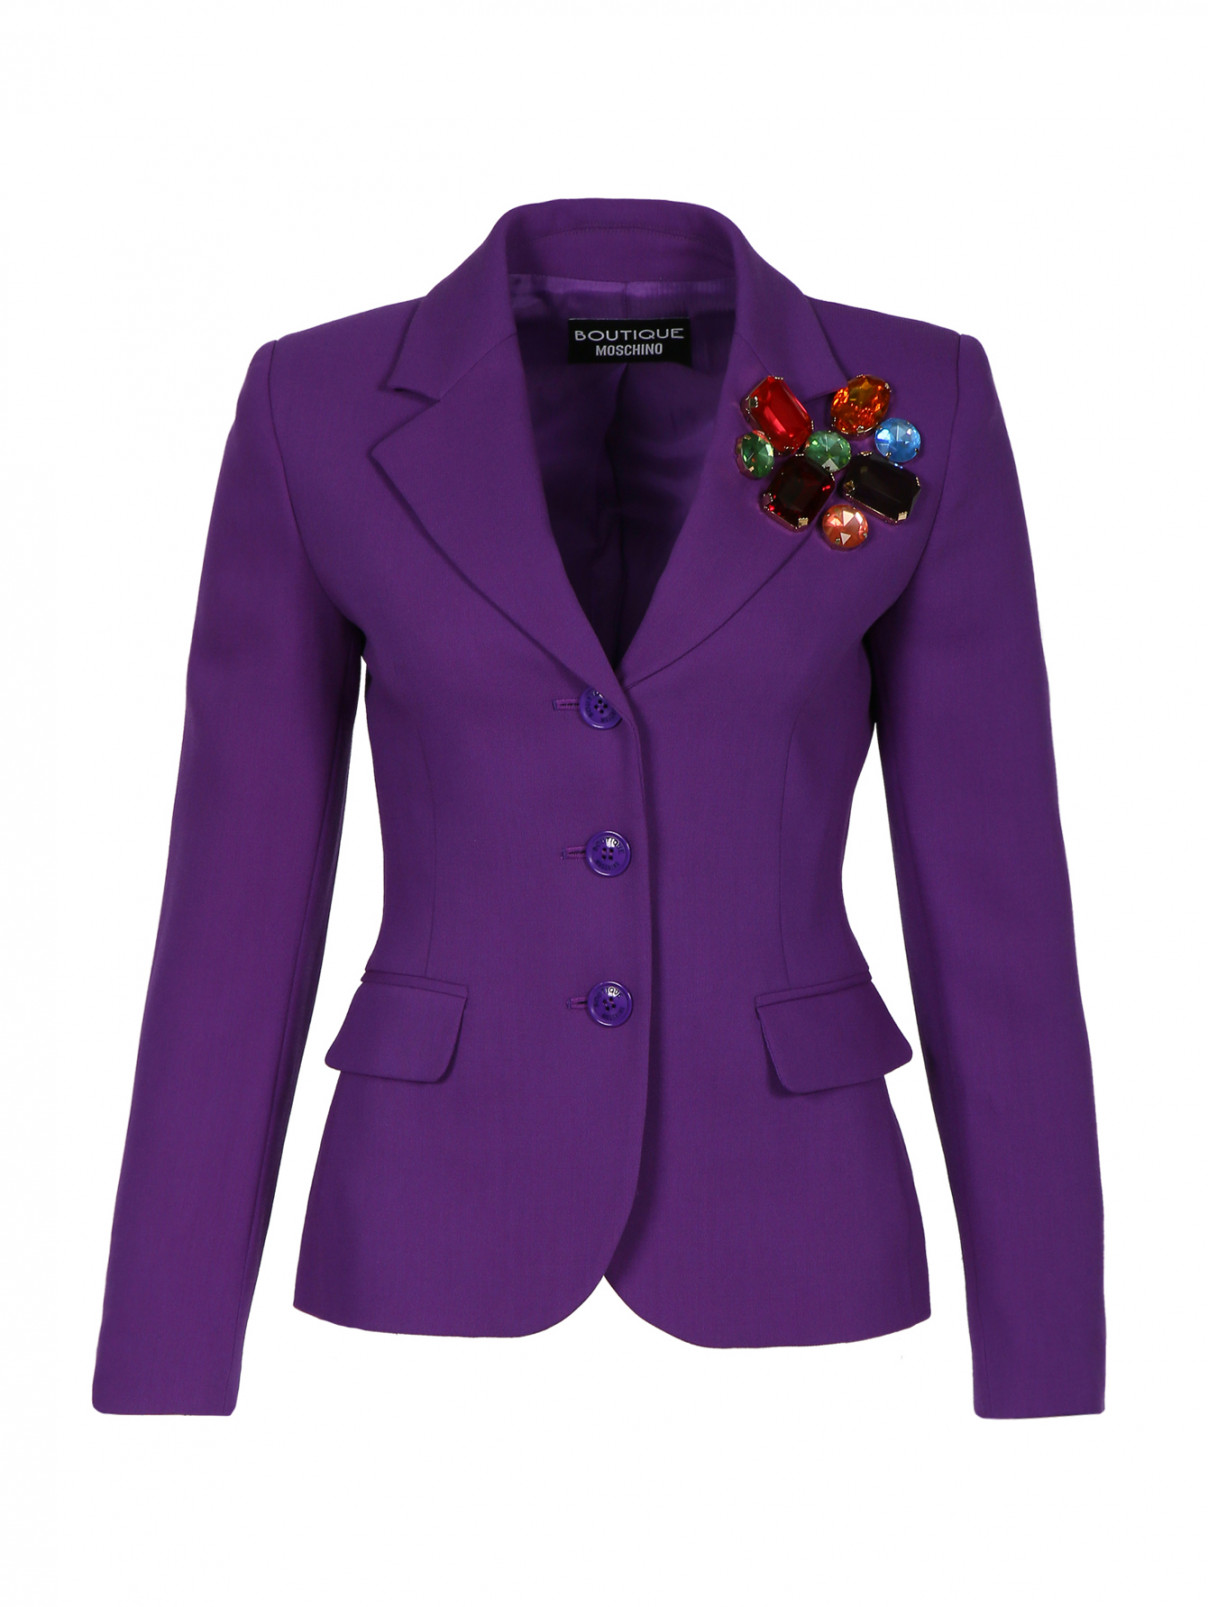 Жакет из шерсти с кристаллами Moschino Boutique  –  Общий вид  – Цвет:  Фиолетовый